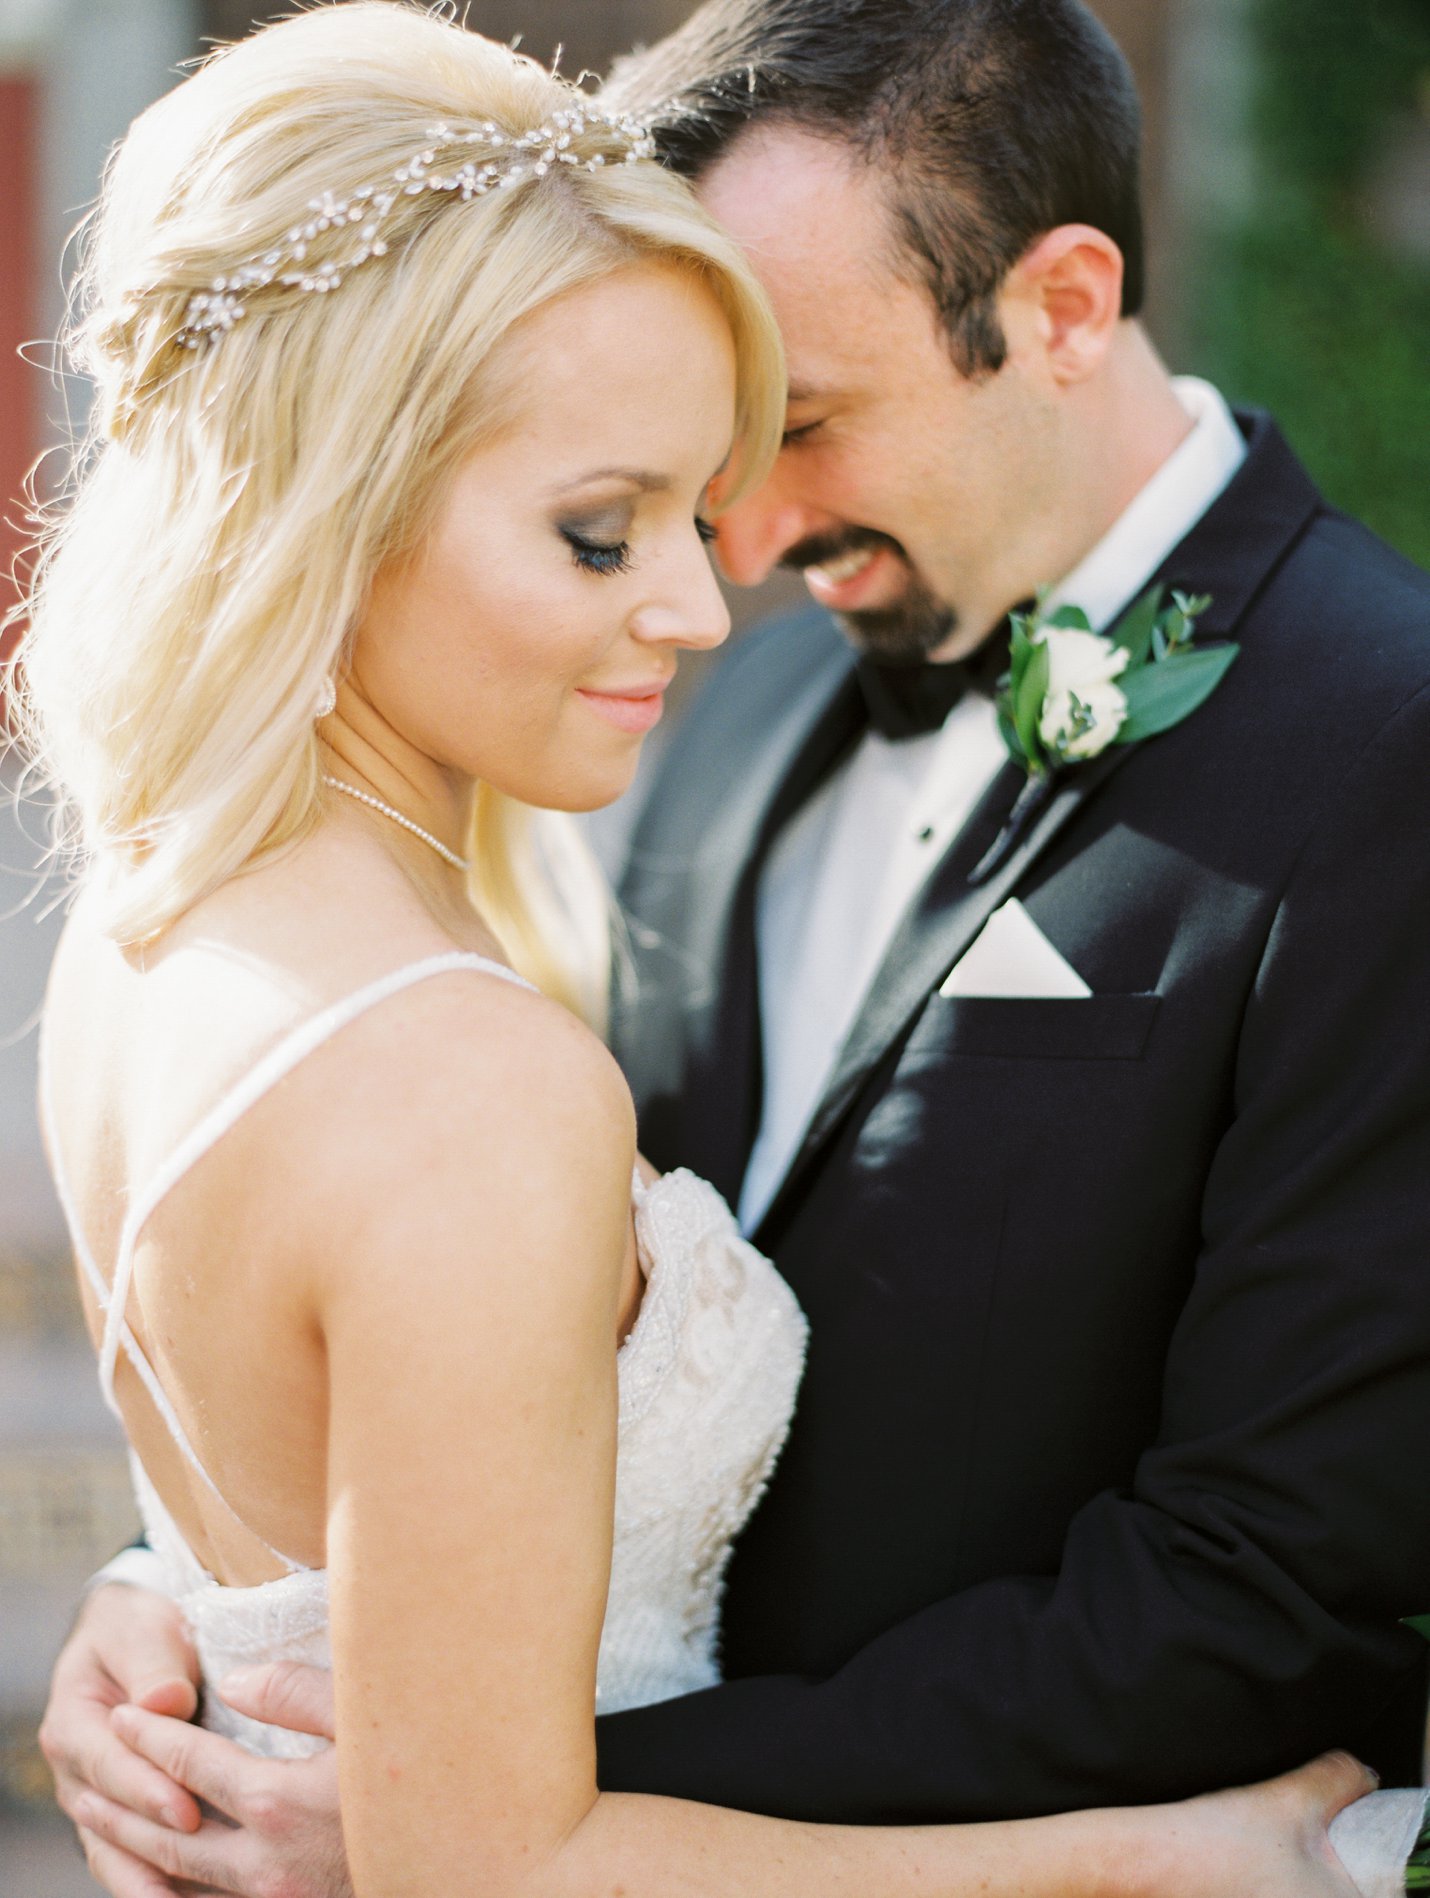 Omni Montelucia Wedding - Scottsdale Wedding Photographer - Rachel Solomon Photography